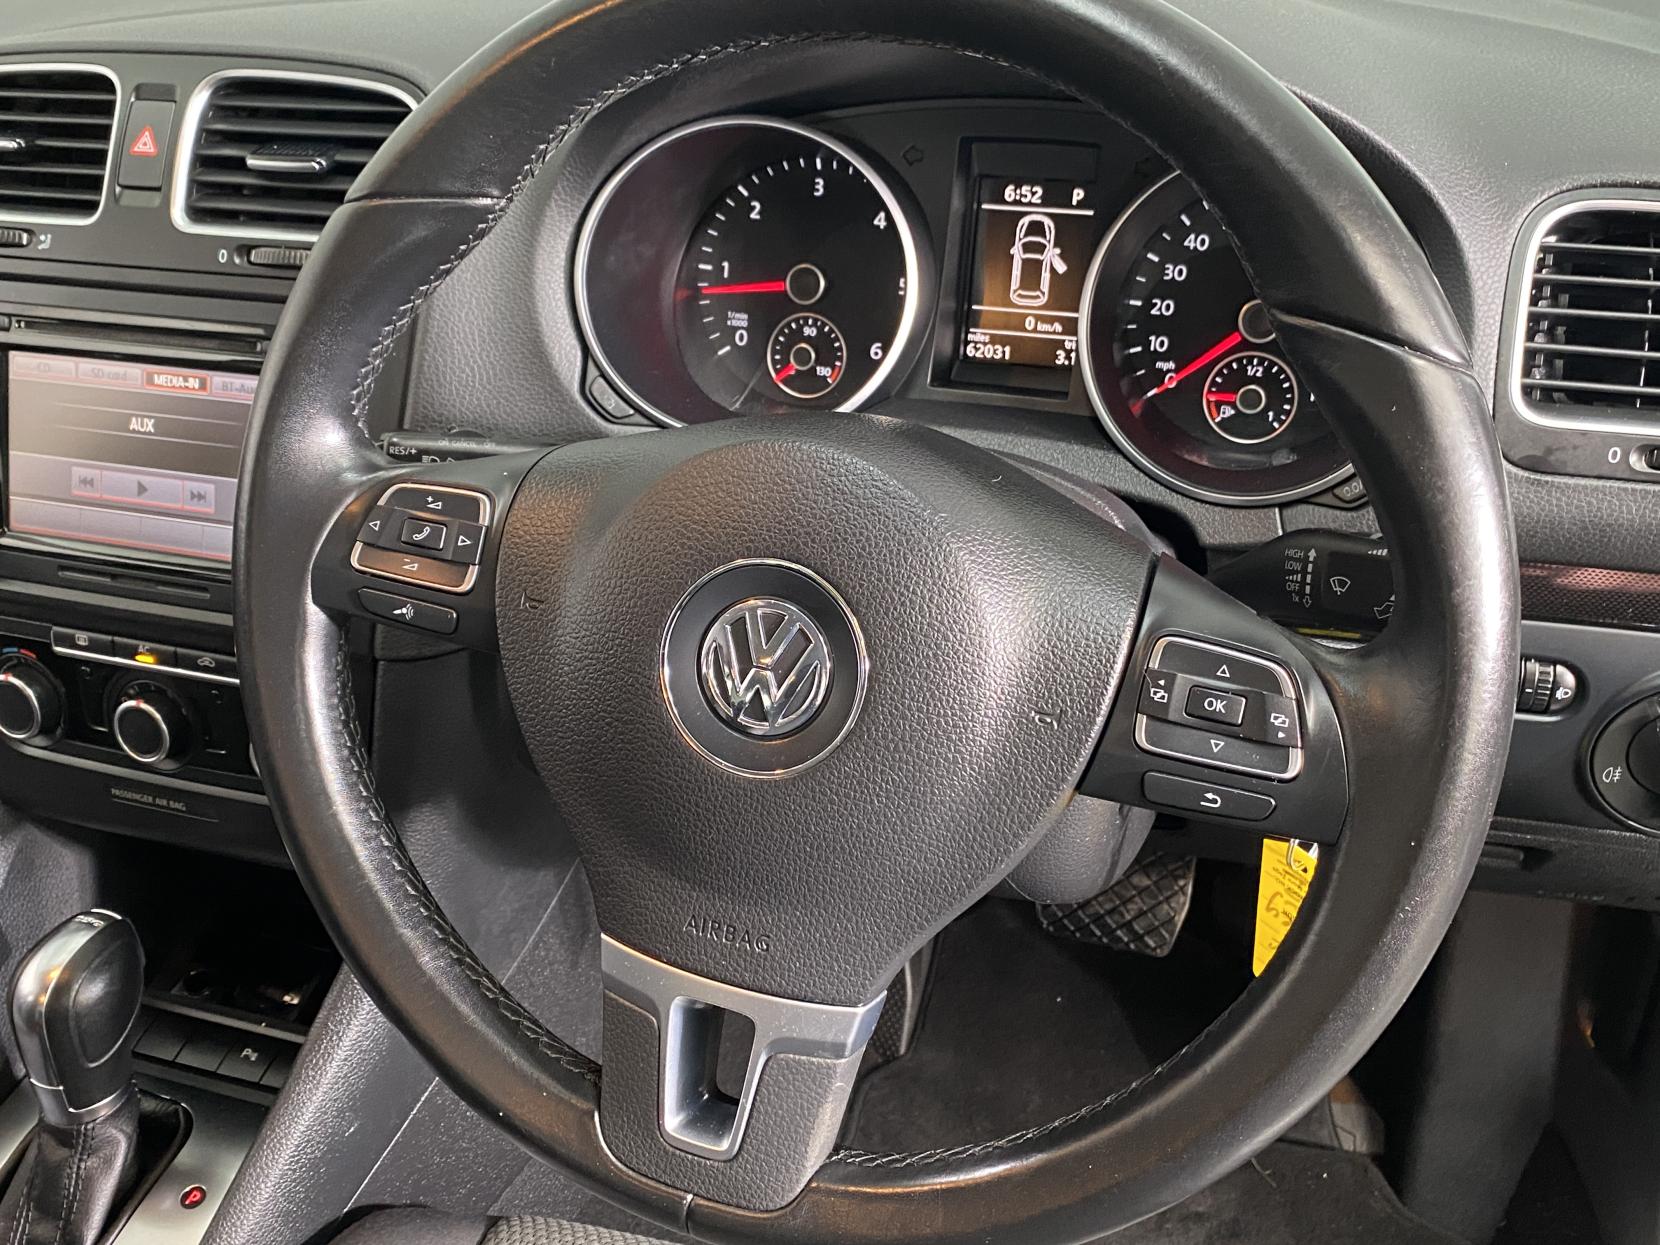 Volkswagen Golf 1.6 TDI Match Hatchback 5dr Diesel DSG Euro 5 (105 ps)